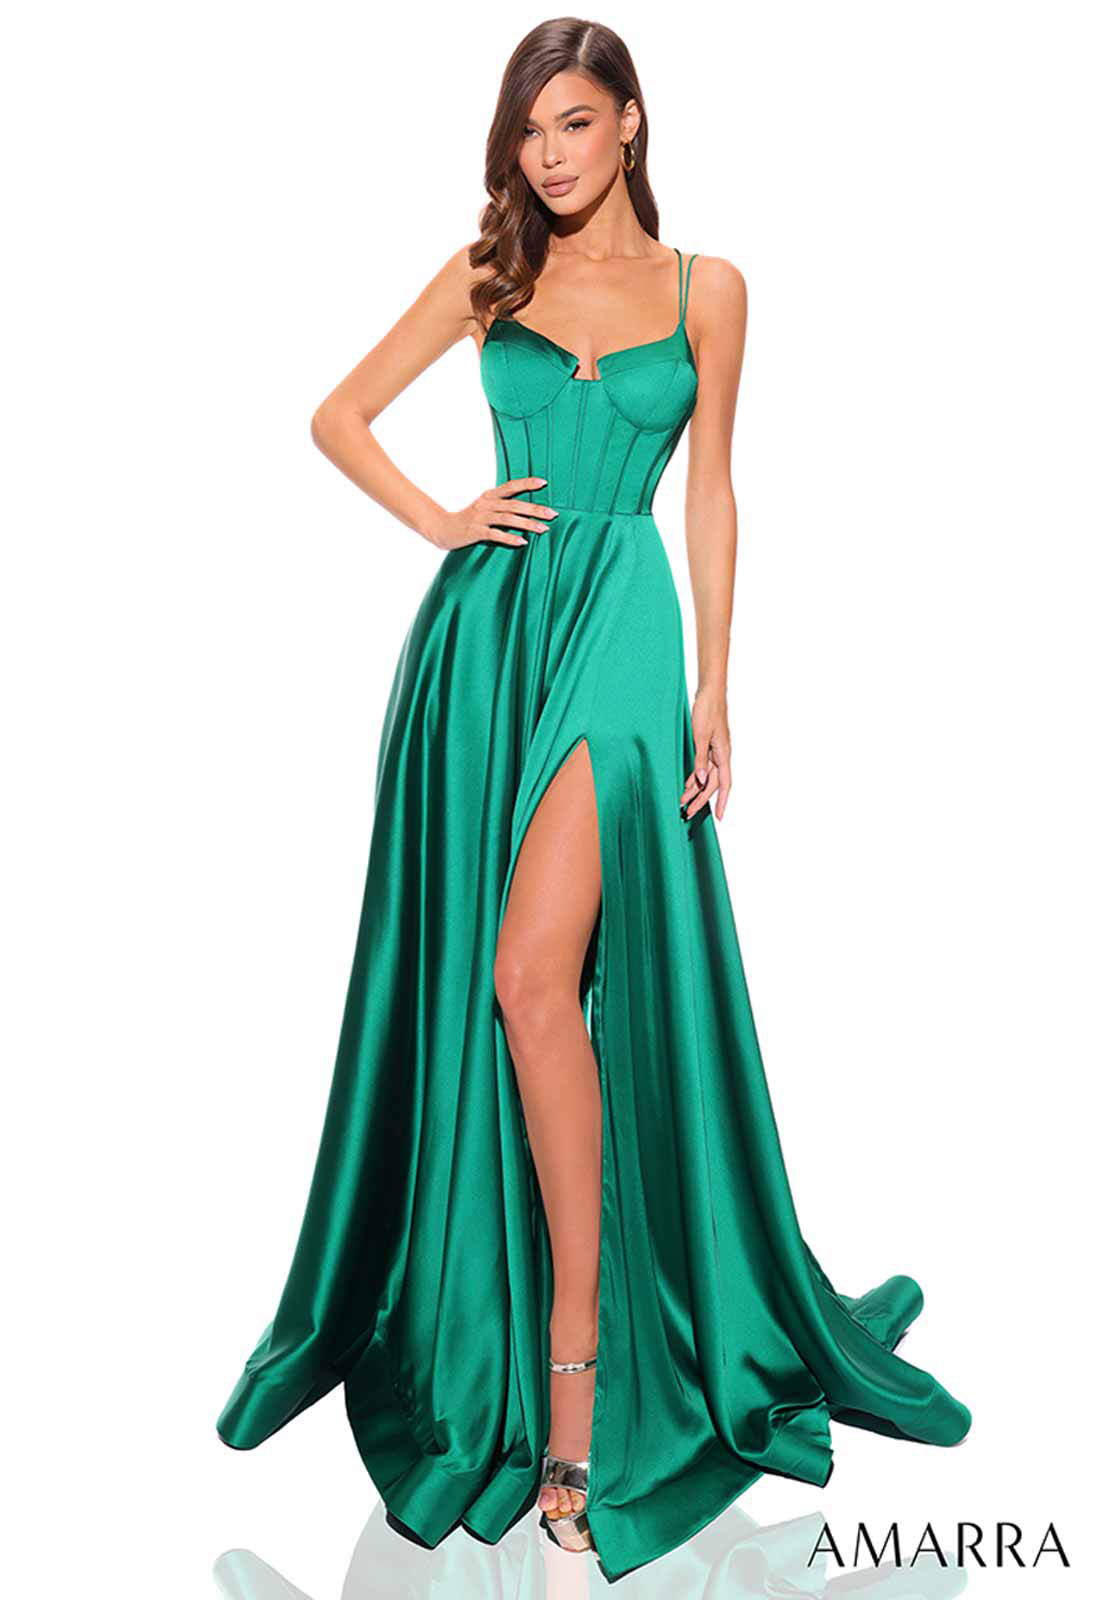 Amarra Emerald Zen Corset Dress for Little Black Dress